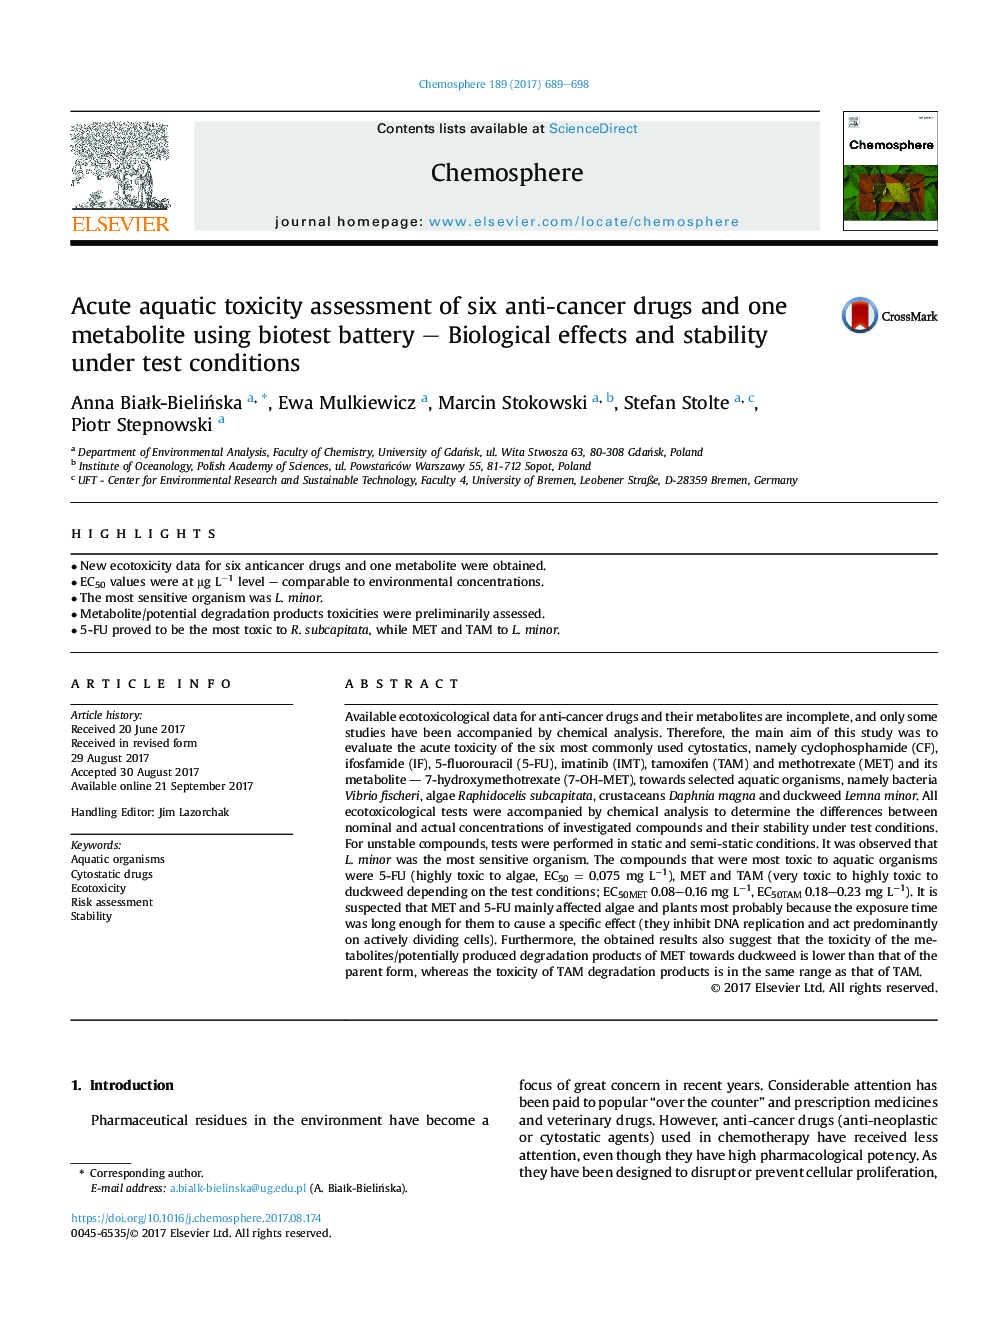 ارزیابی سمیت هتروزیک از شش دارو ضد سرطان و یک متابولیت با استفاده از باتری بیوتست - اثرات بیولوژیکی و پایداری در شرایط آزمایش 